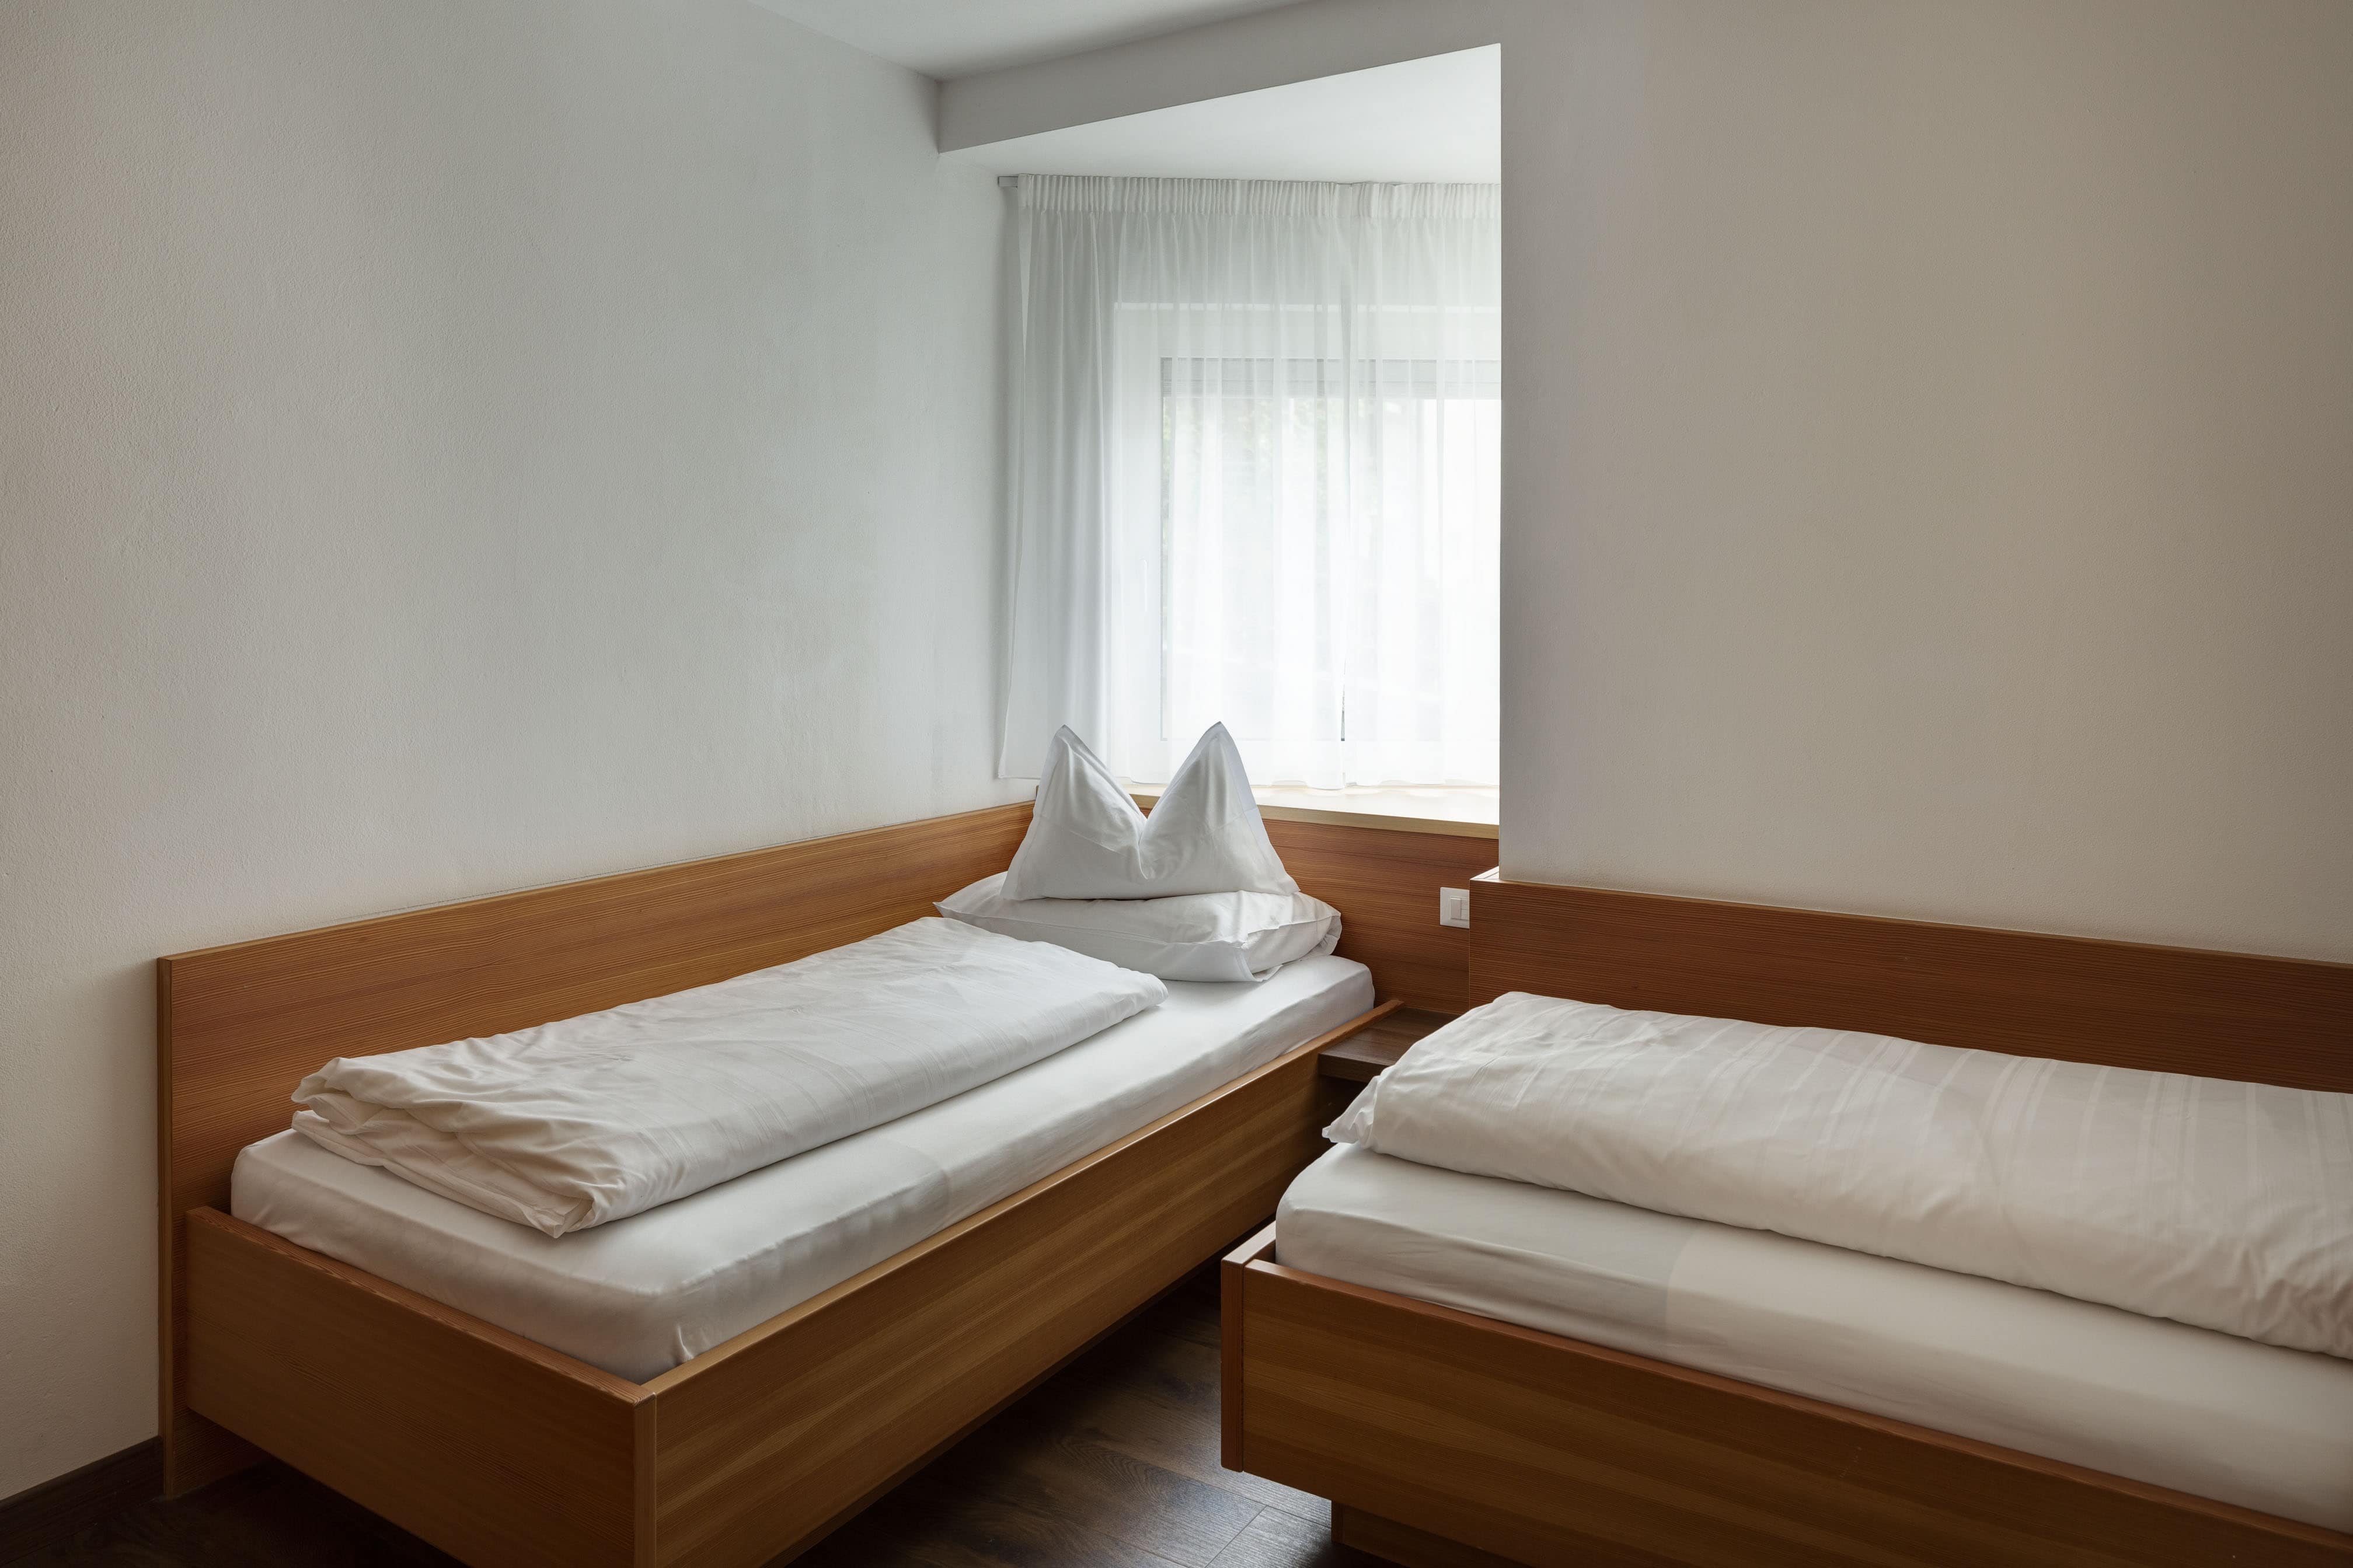 Suite Hirzer camera due letti singoli Hotel Lechner Alto Adige